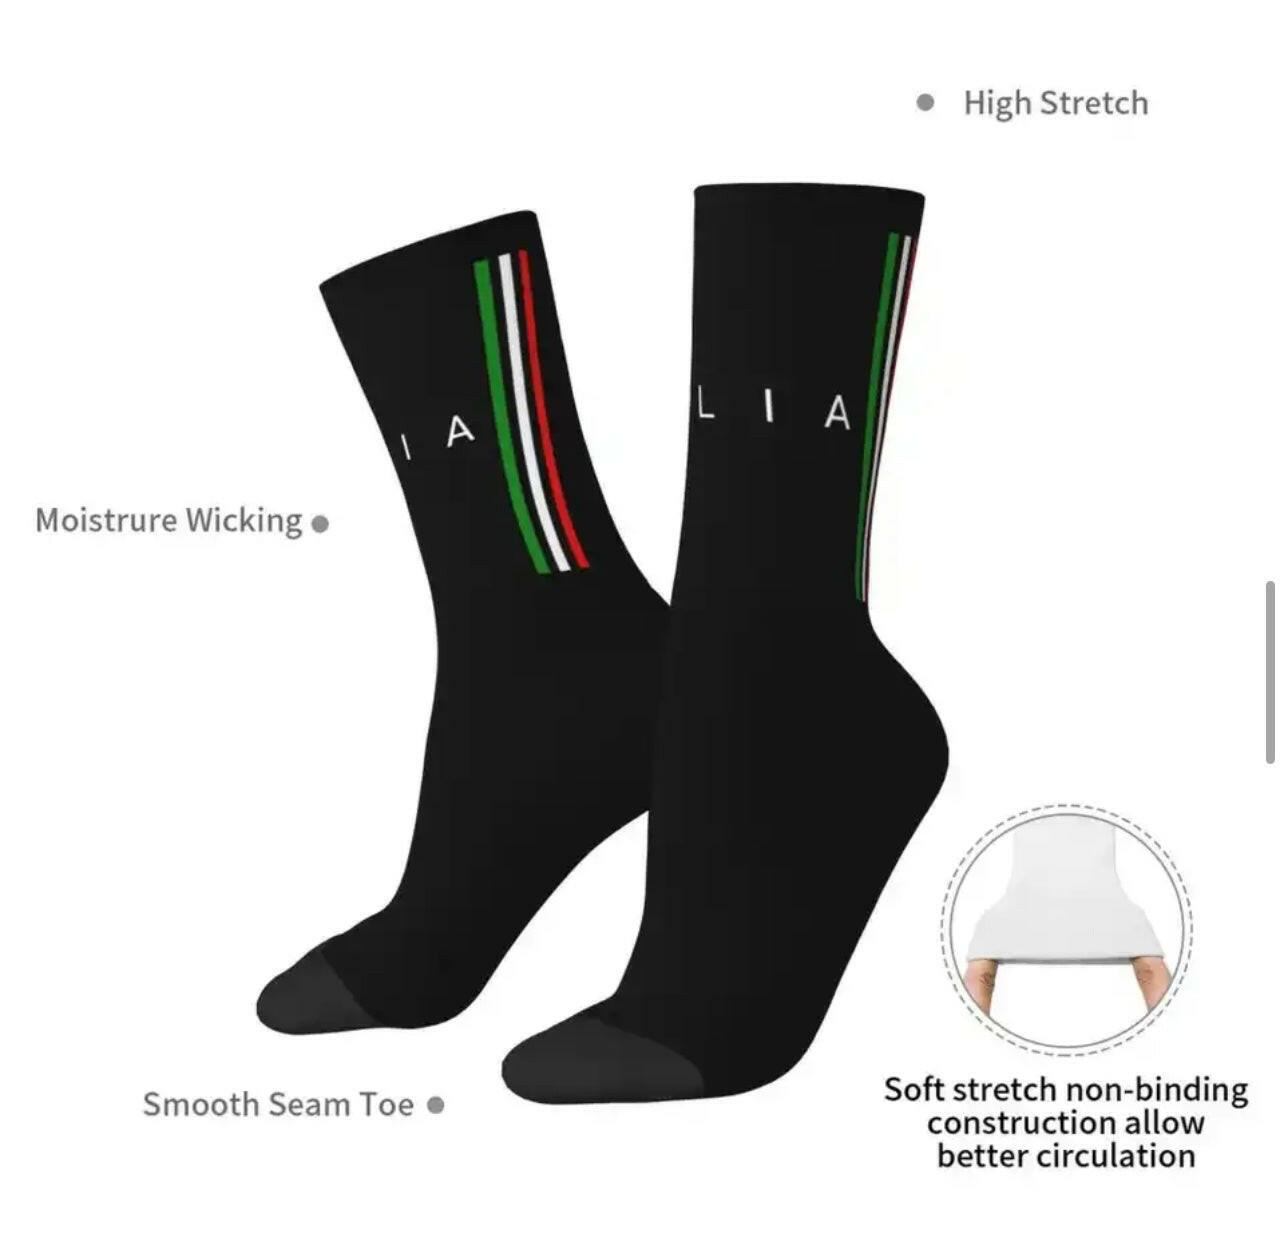 Italia Socks.